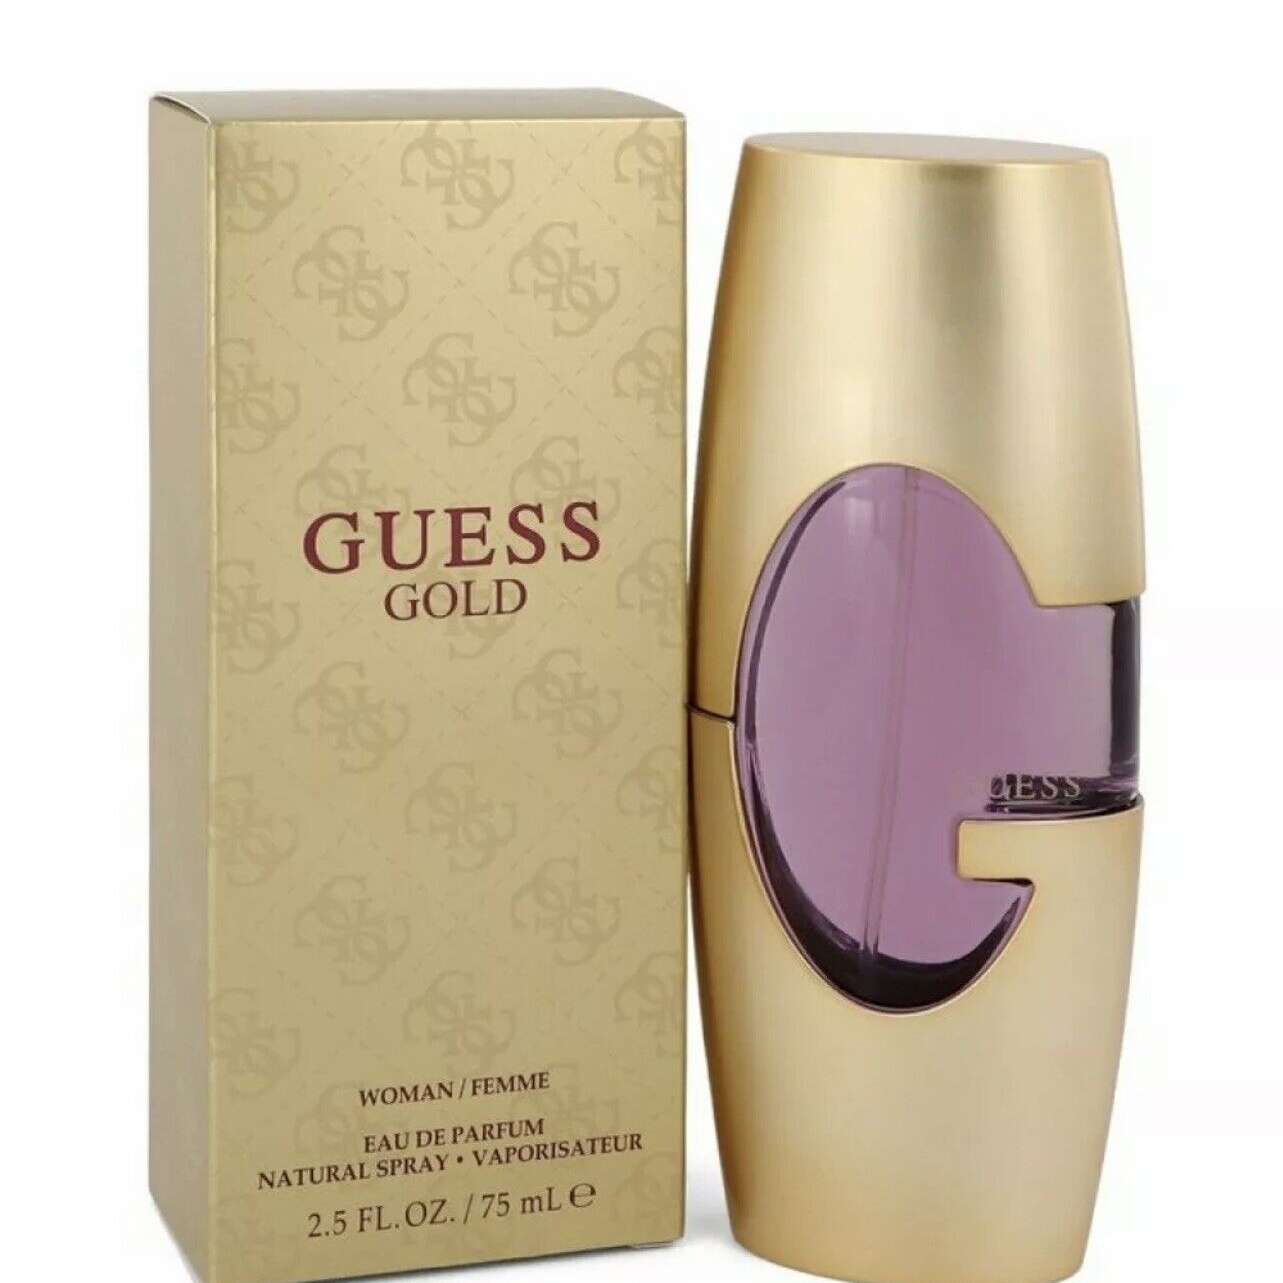 Guess - Guess Gold 75ML Eau De Parfum Spray